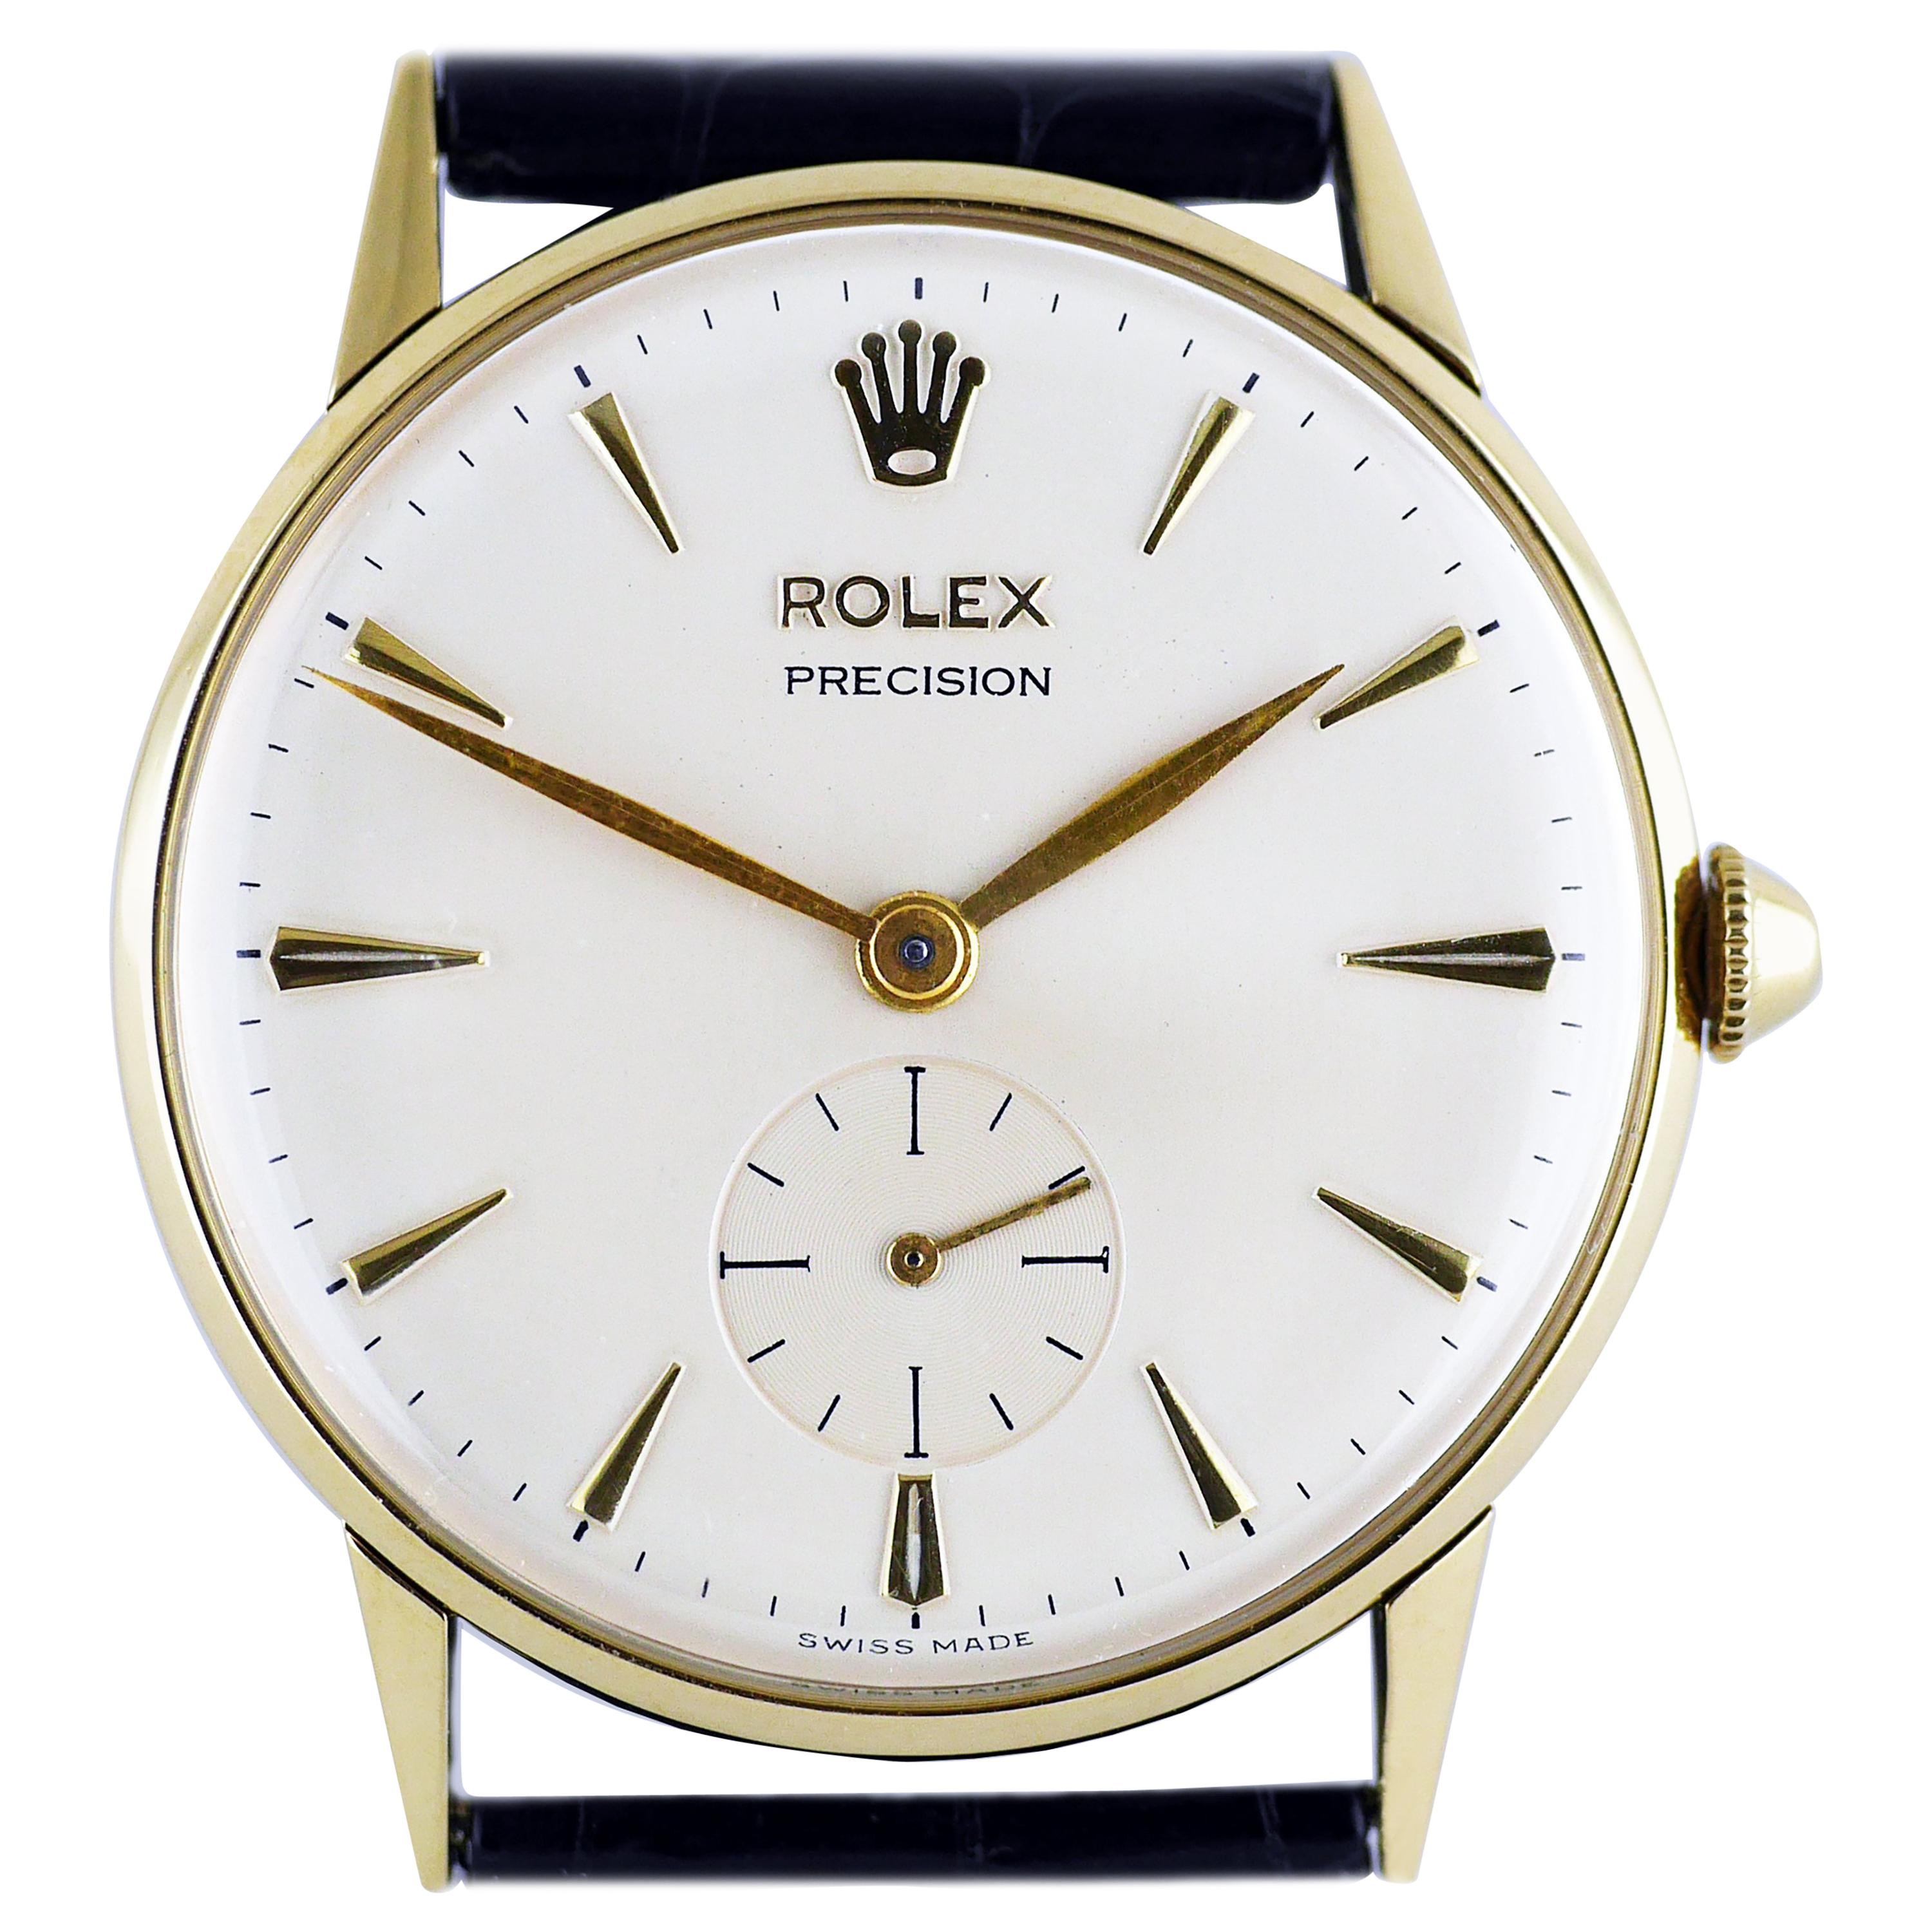 Rolex Precision Gold Wristwatch, circa 1959